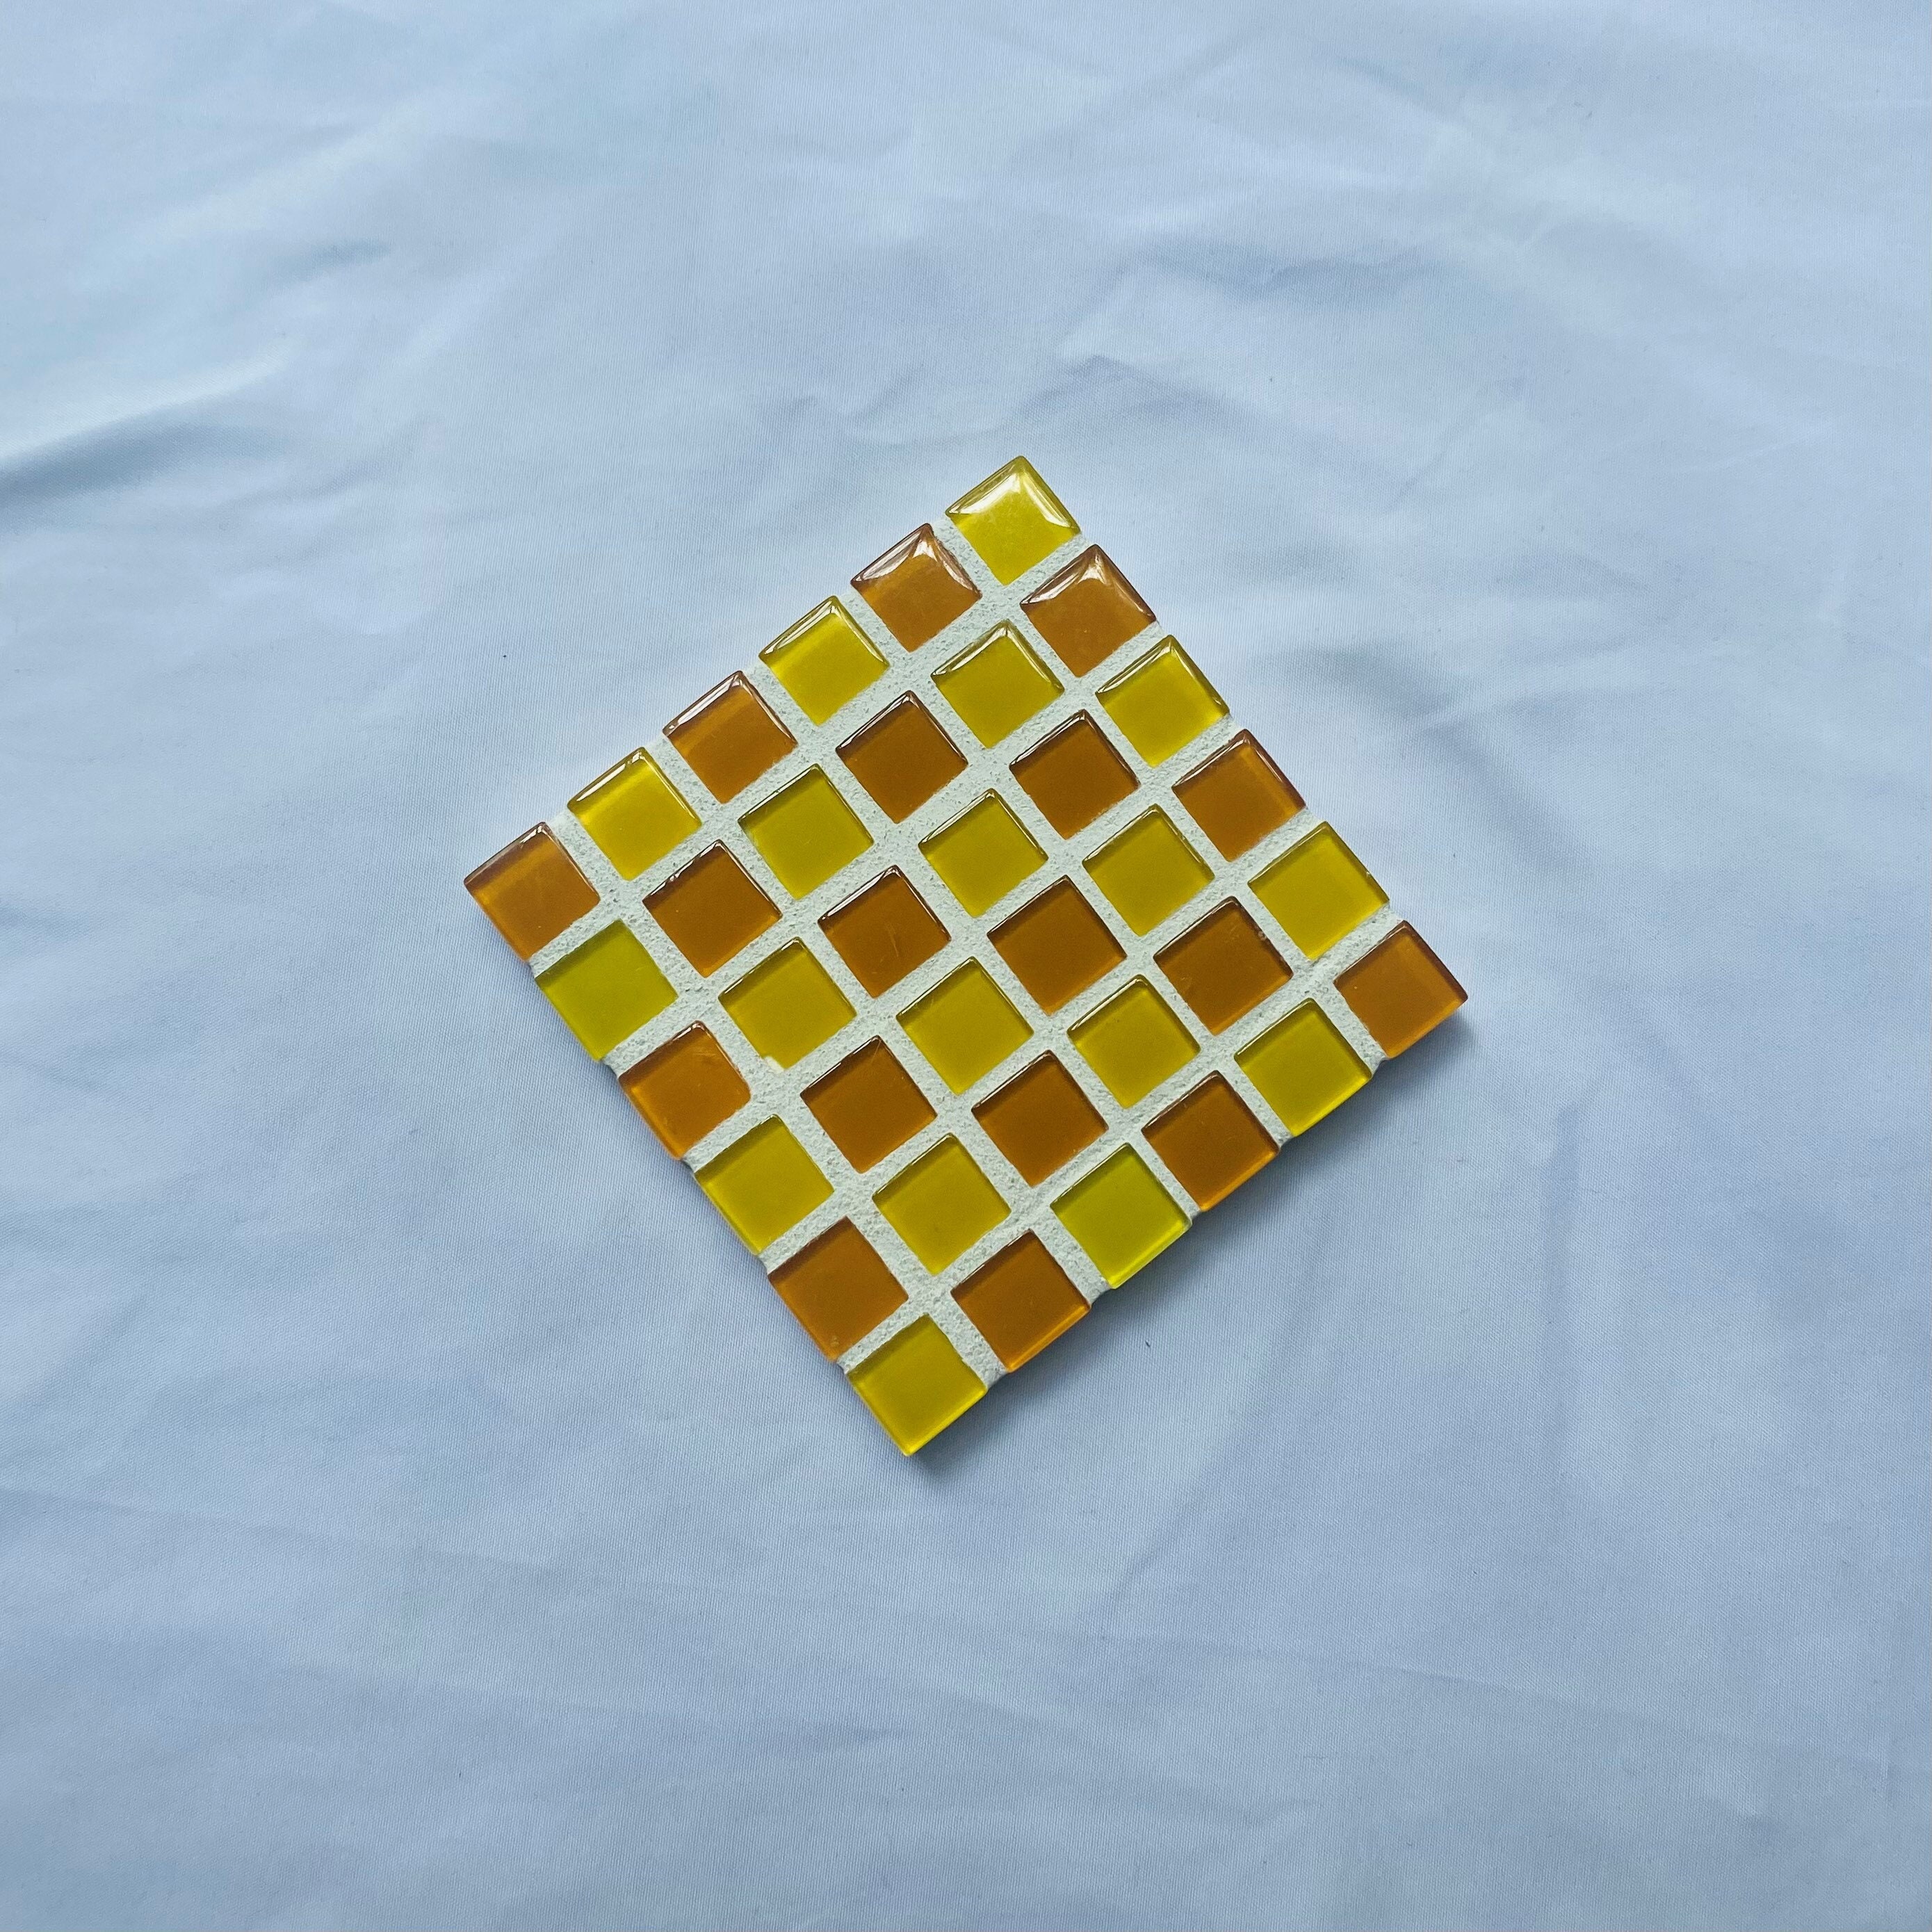 50 Pieces 3mm Thick Felt Squares, 1 Felt Square Tiles 